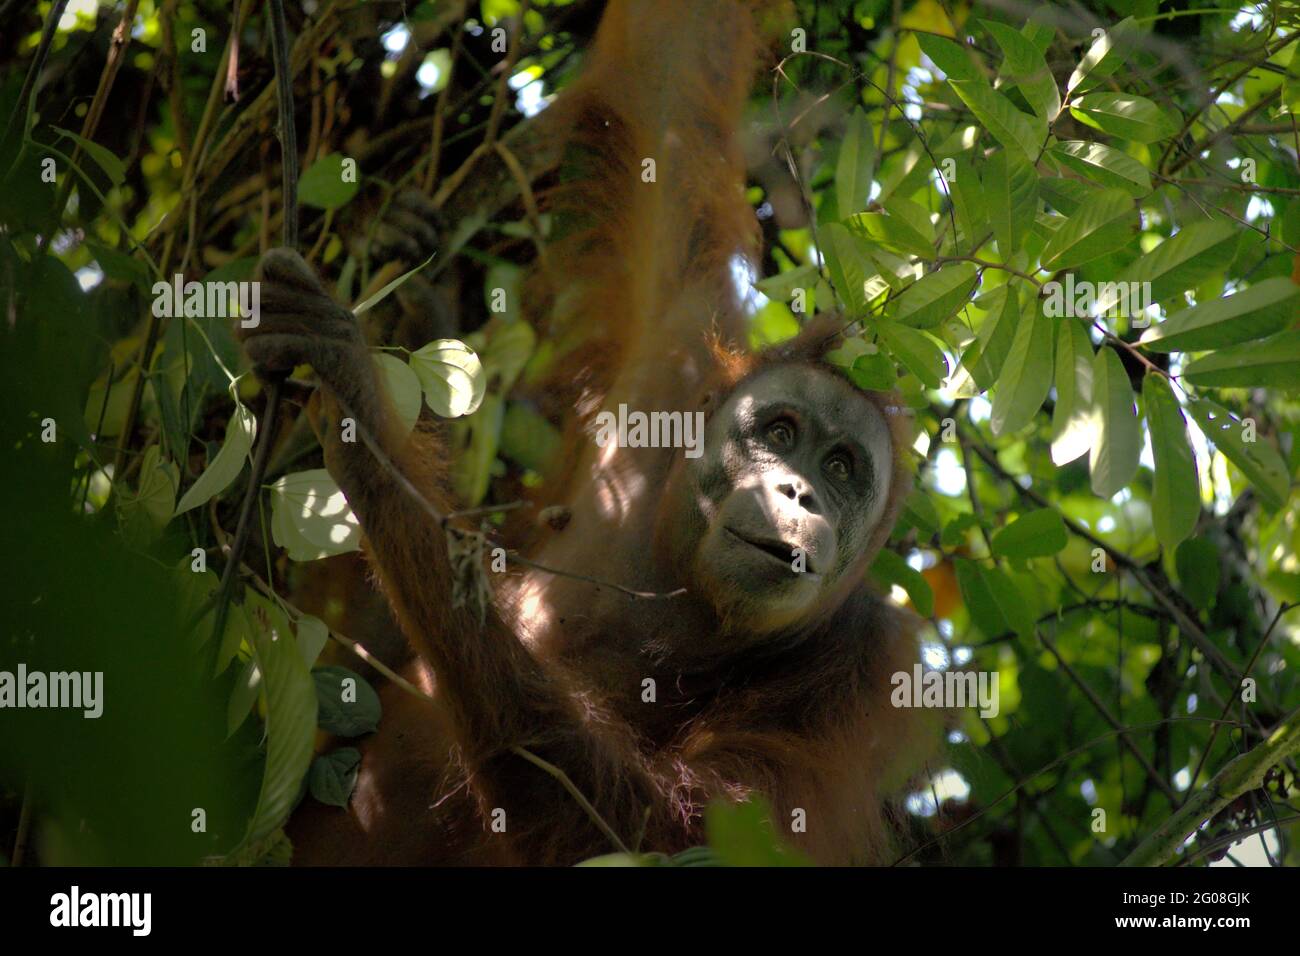 Wilde Orang-Utan-Nahrungssuche im Kutai-Nationalpark, Ost-Kalimantan, Indonesien. Unterart Bornean orangutan (Pongo pygmaeus morio) im Nordosten. Abgesehen von Entwaldung und Wilderei bringt der Klimawandel mehr Aussterberisiko für diese endemische, vom Aussterben bedrohte Art mit sich. Höhere Temperaturen, ungewöhnliche und extreme Klimabedingungen, zum Beispiel, werden die Verfügbarkeit ihrer Lebensmittel beeinflussen. Stockfoto